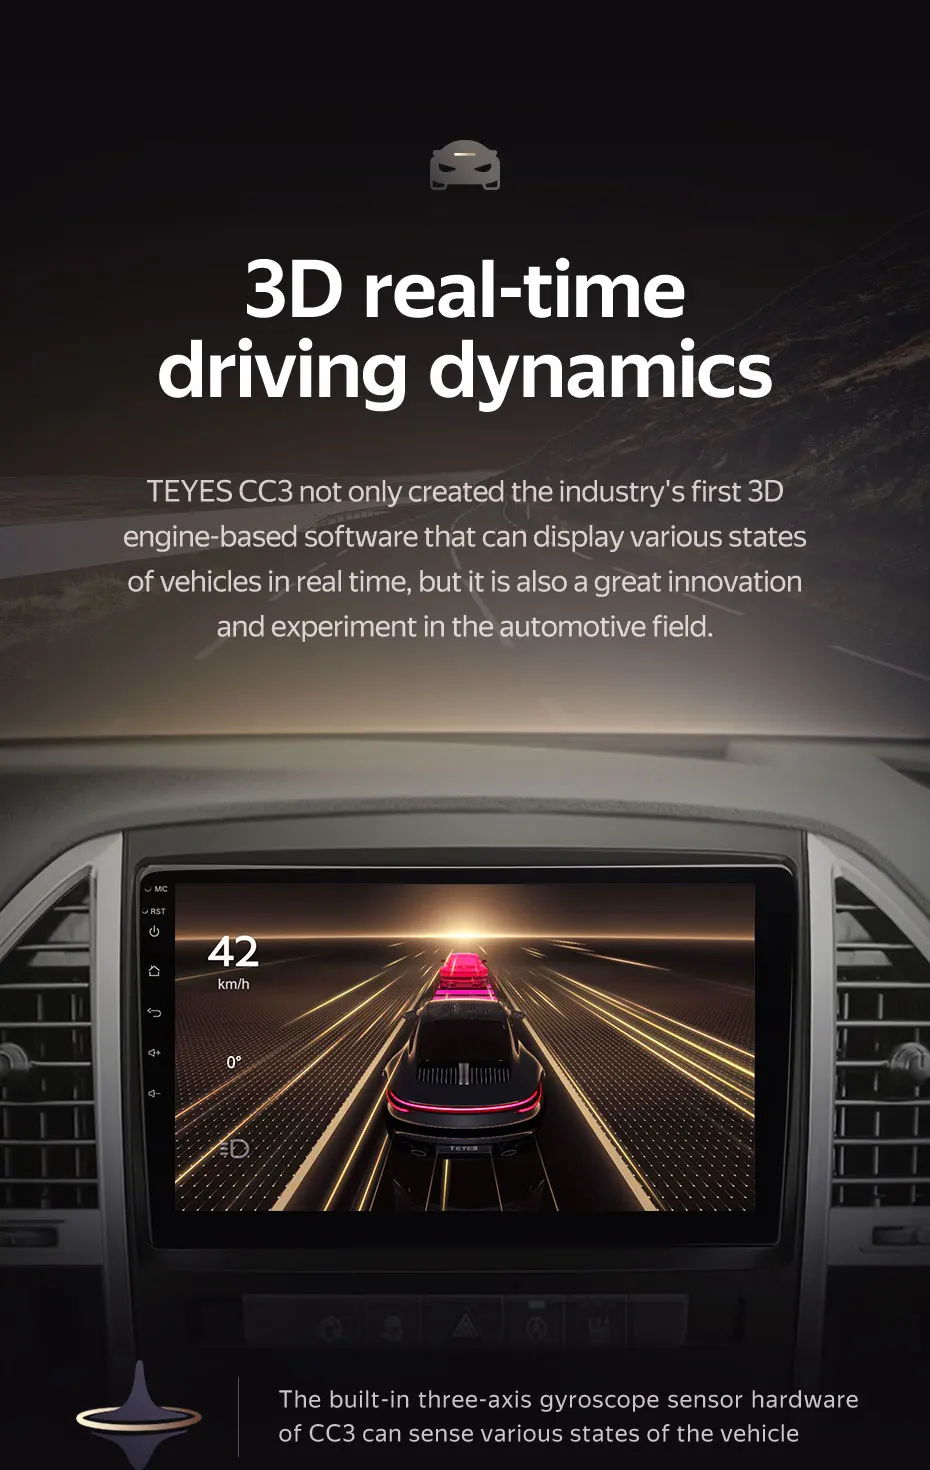 39087円 本日の目玉 Car Stereo for Mercedes Benz Vito 3 W447 2014-2020 GPS Navigation Head Unit 9 Inch Digital Multimedia Player Video Receiver